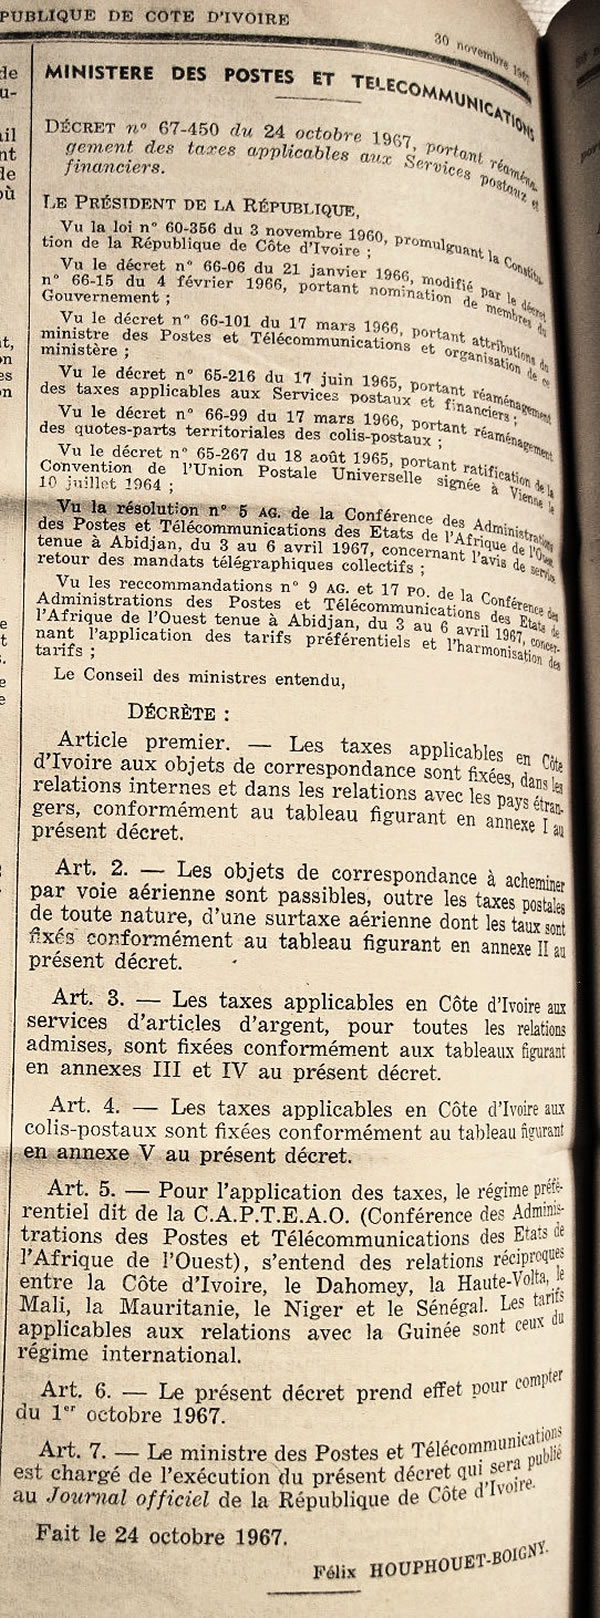 tarifs postaux au départ de la Côte d'Ivoir dans les régimes intérieurs, communs et international ainsi  que les taxes aériennes 1er octobre  1967